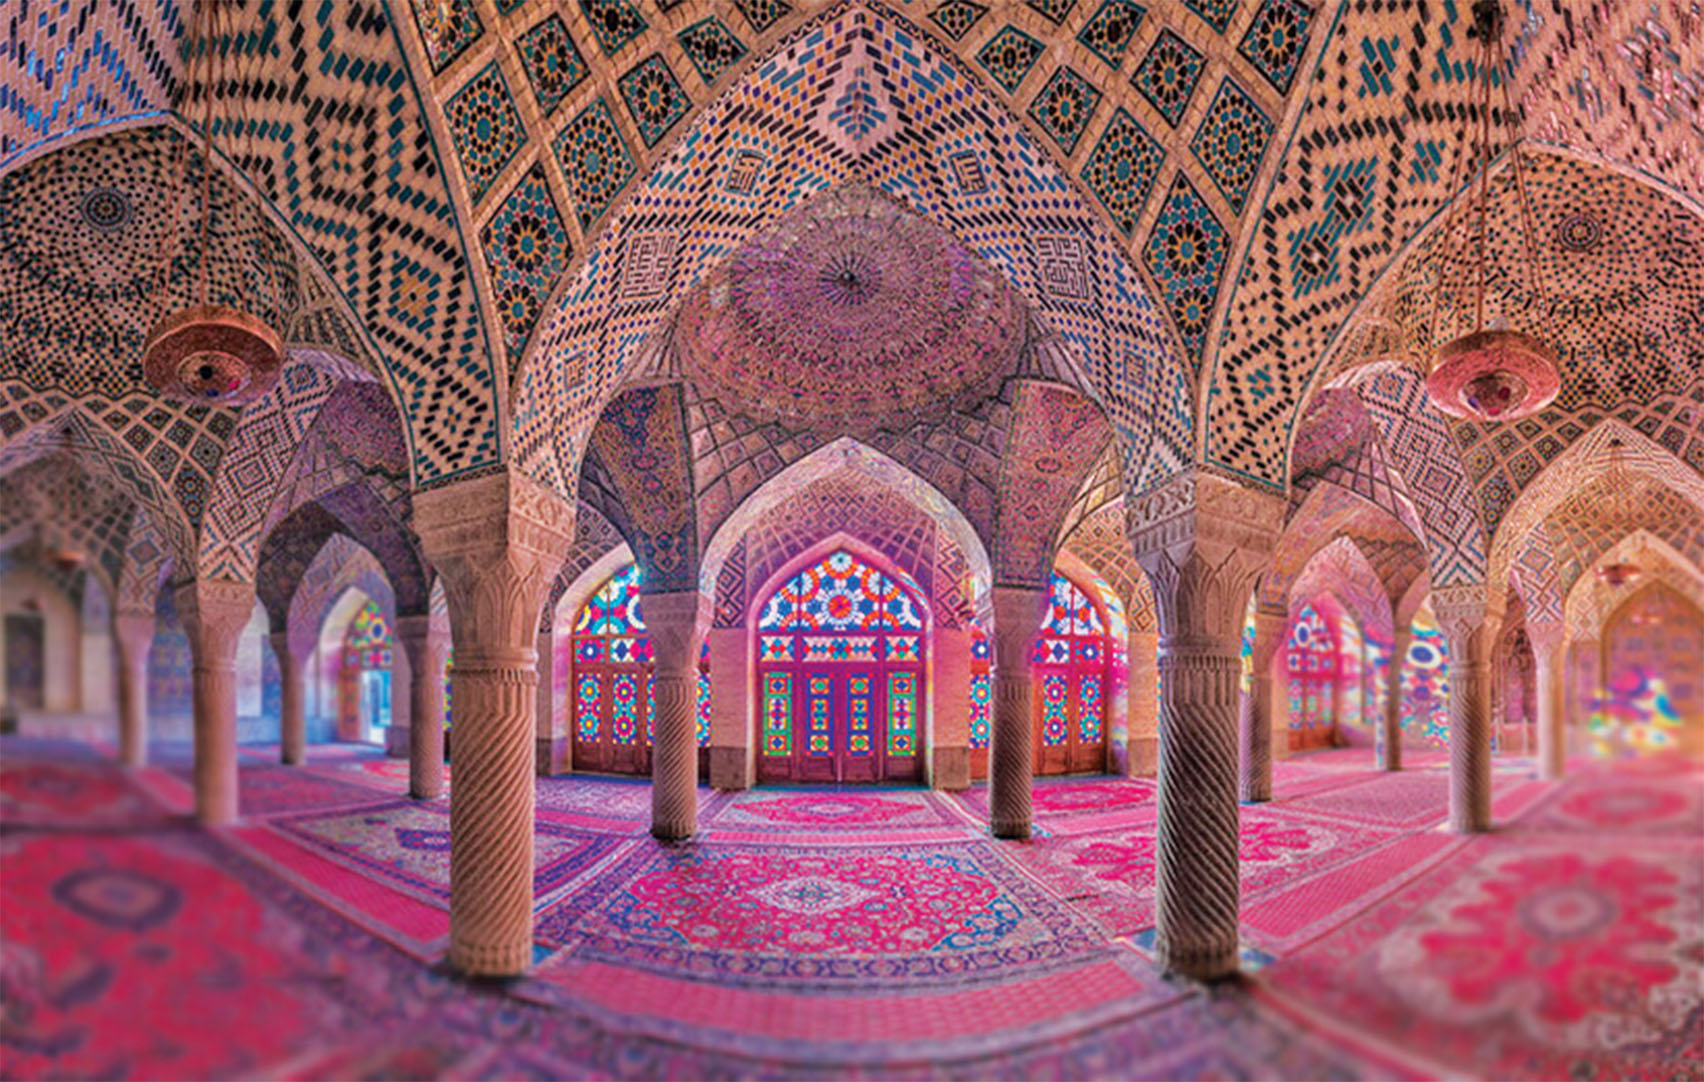 shiraz most beautiful cities in Iran, Las ciudades más bonitas de Irán